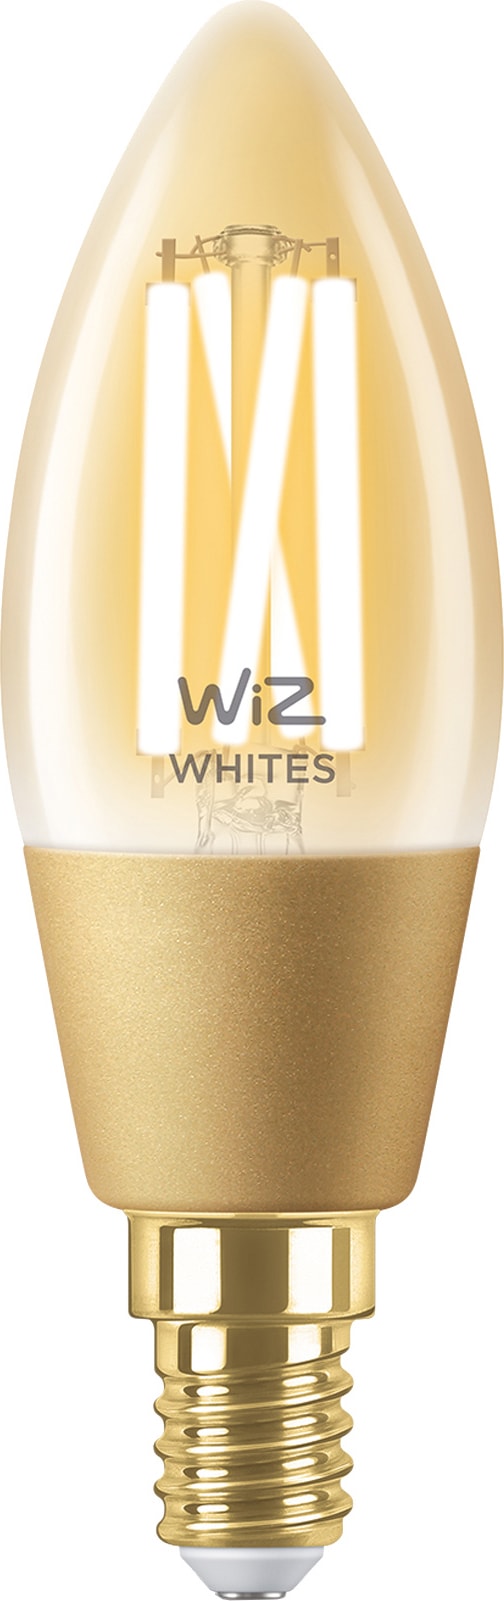 Wiz Light Mignon LED-pære 5W E14 871869978725700